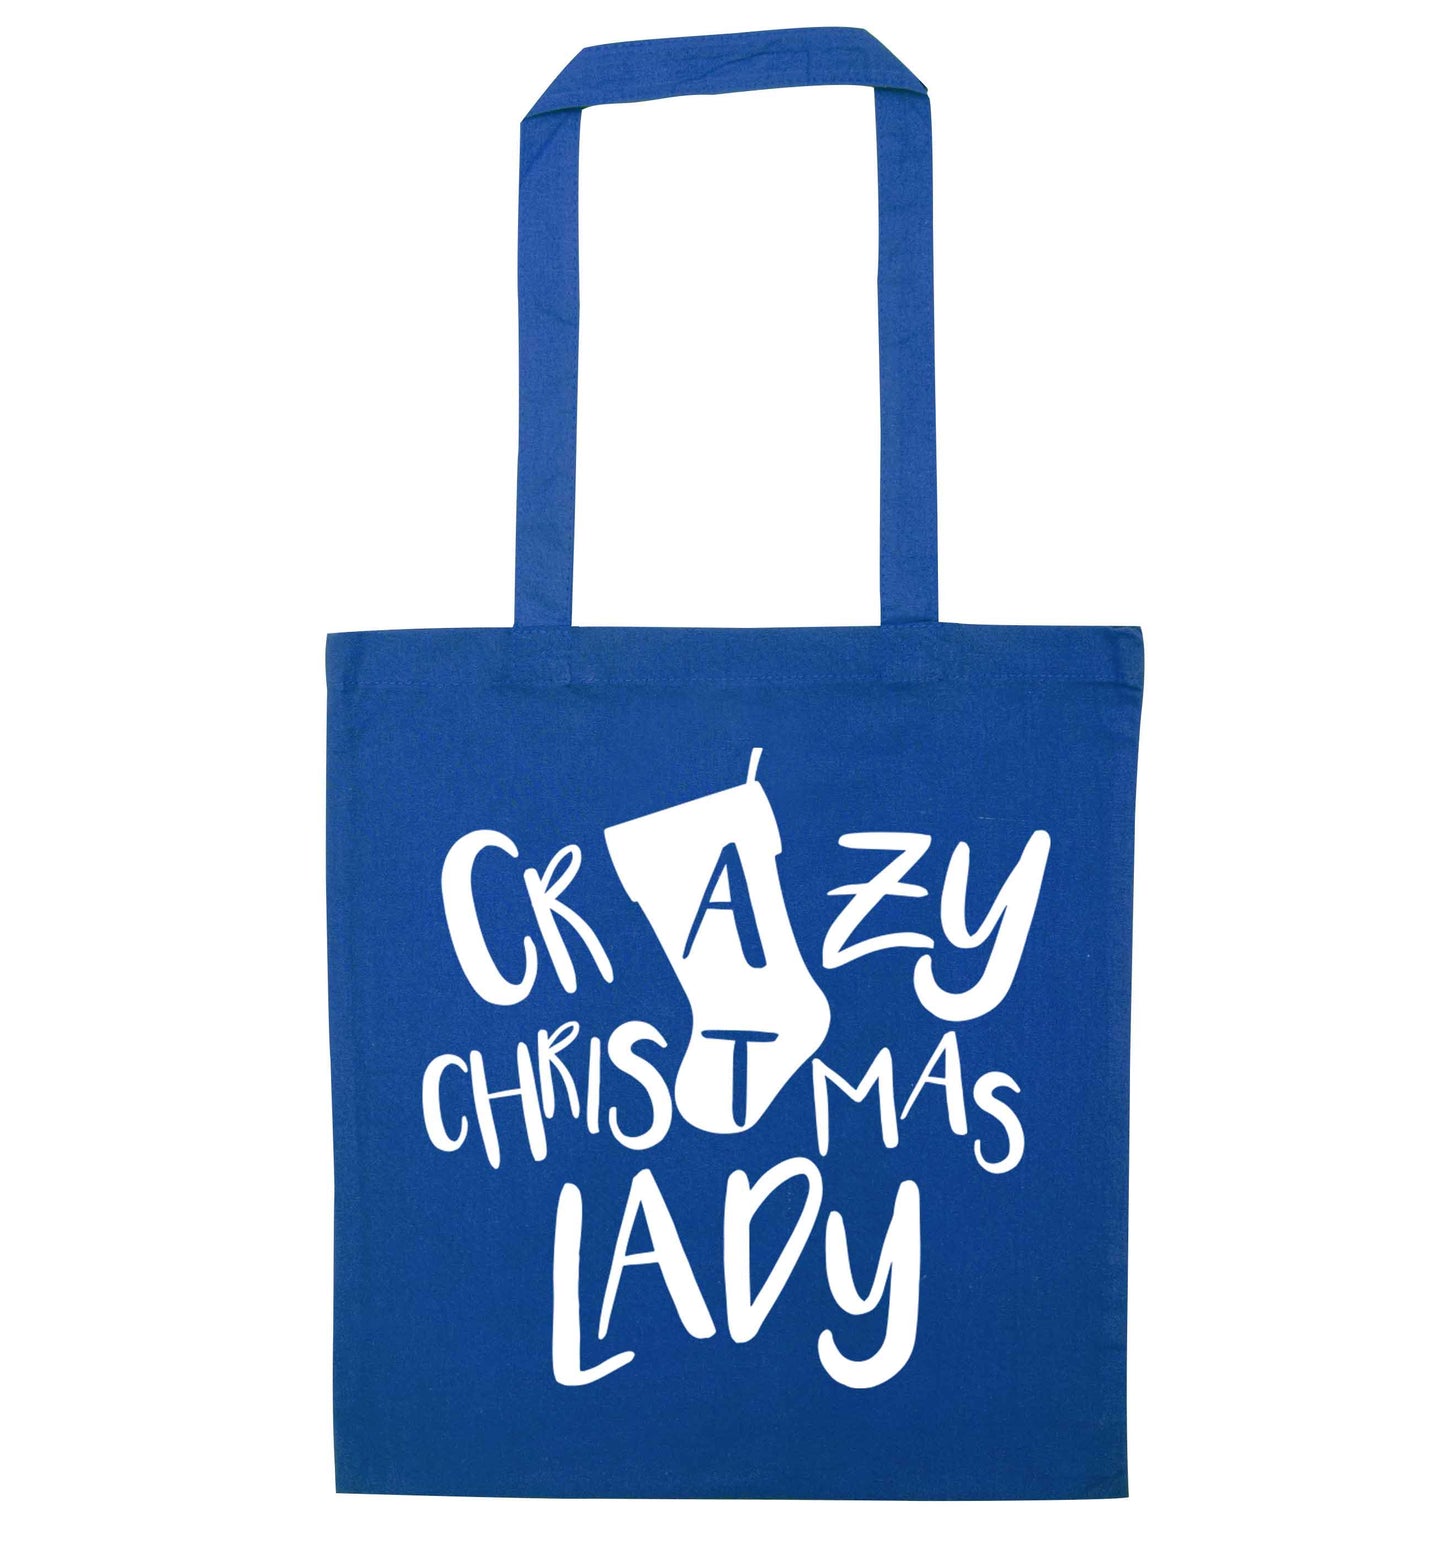 Crazy Christmas Dude blue tote bag